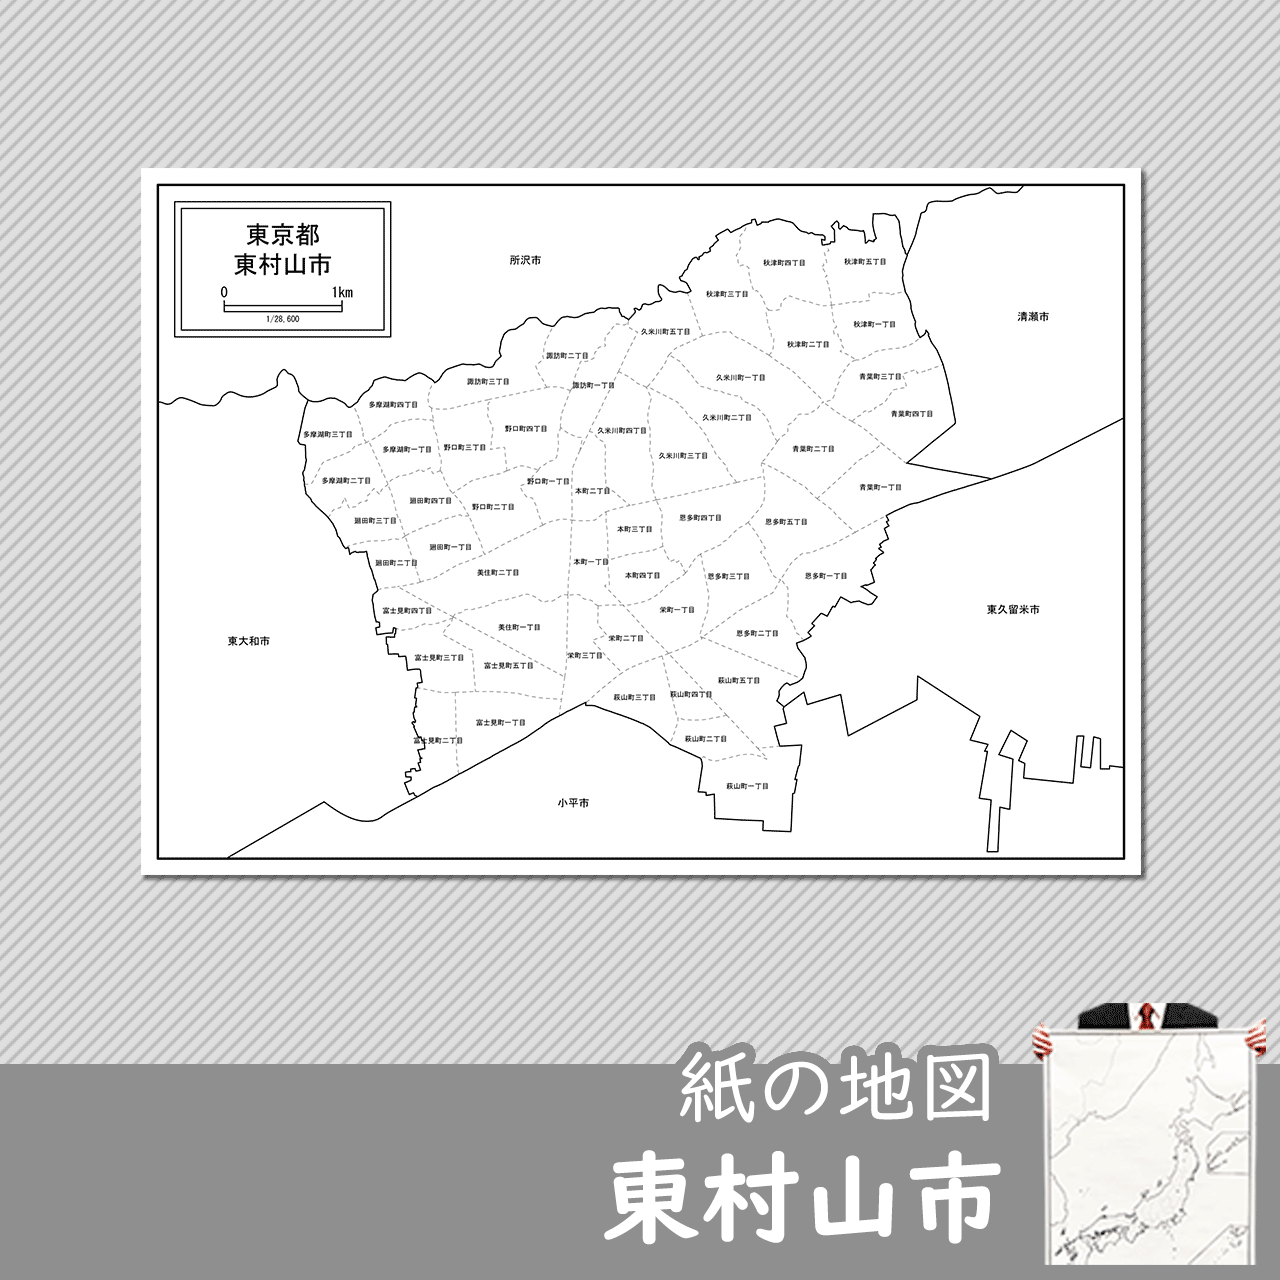 東村山市の白地図